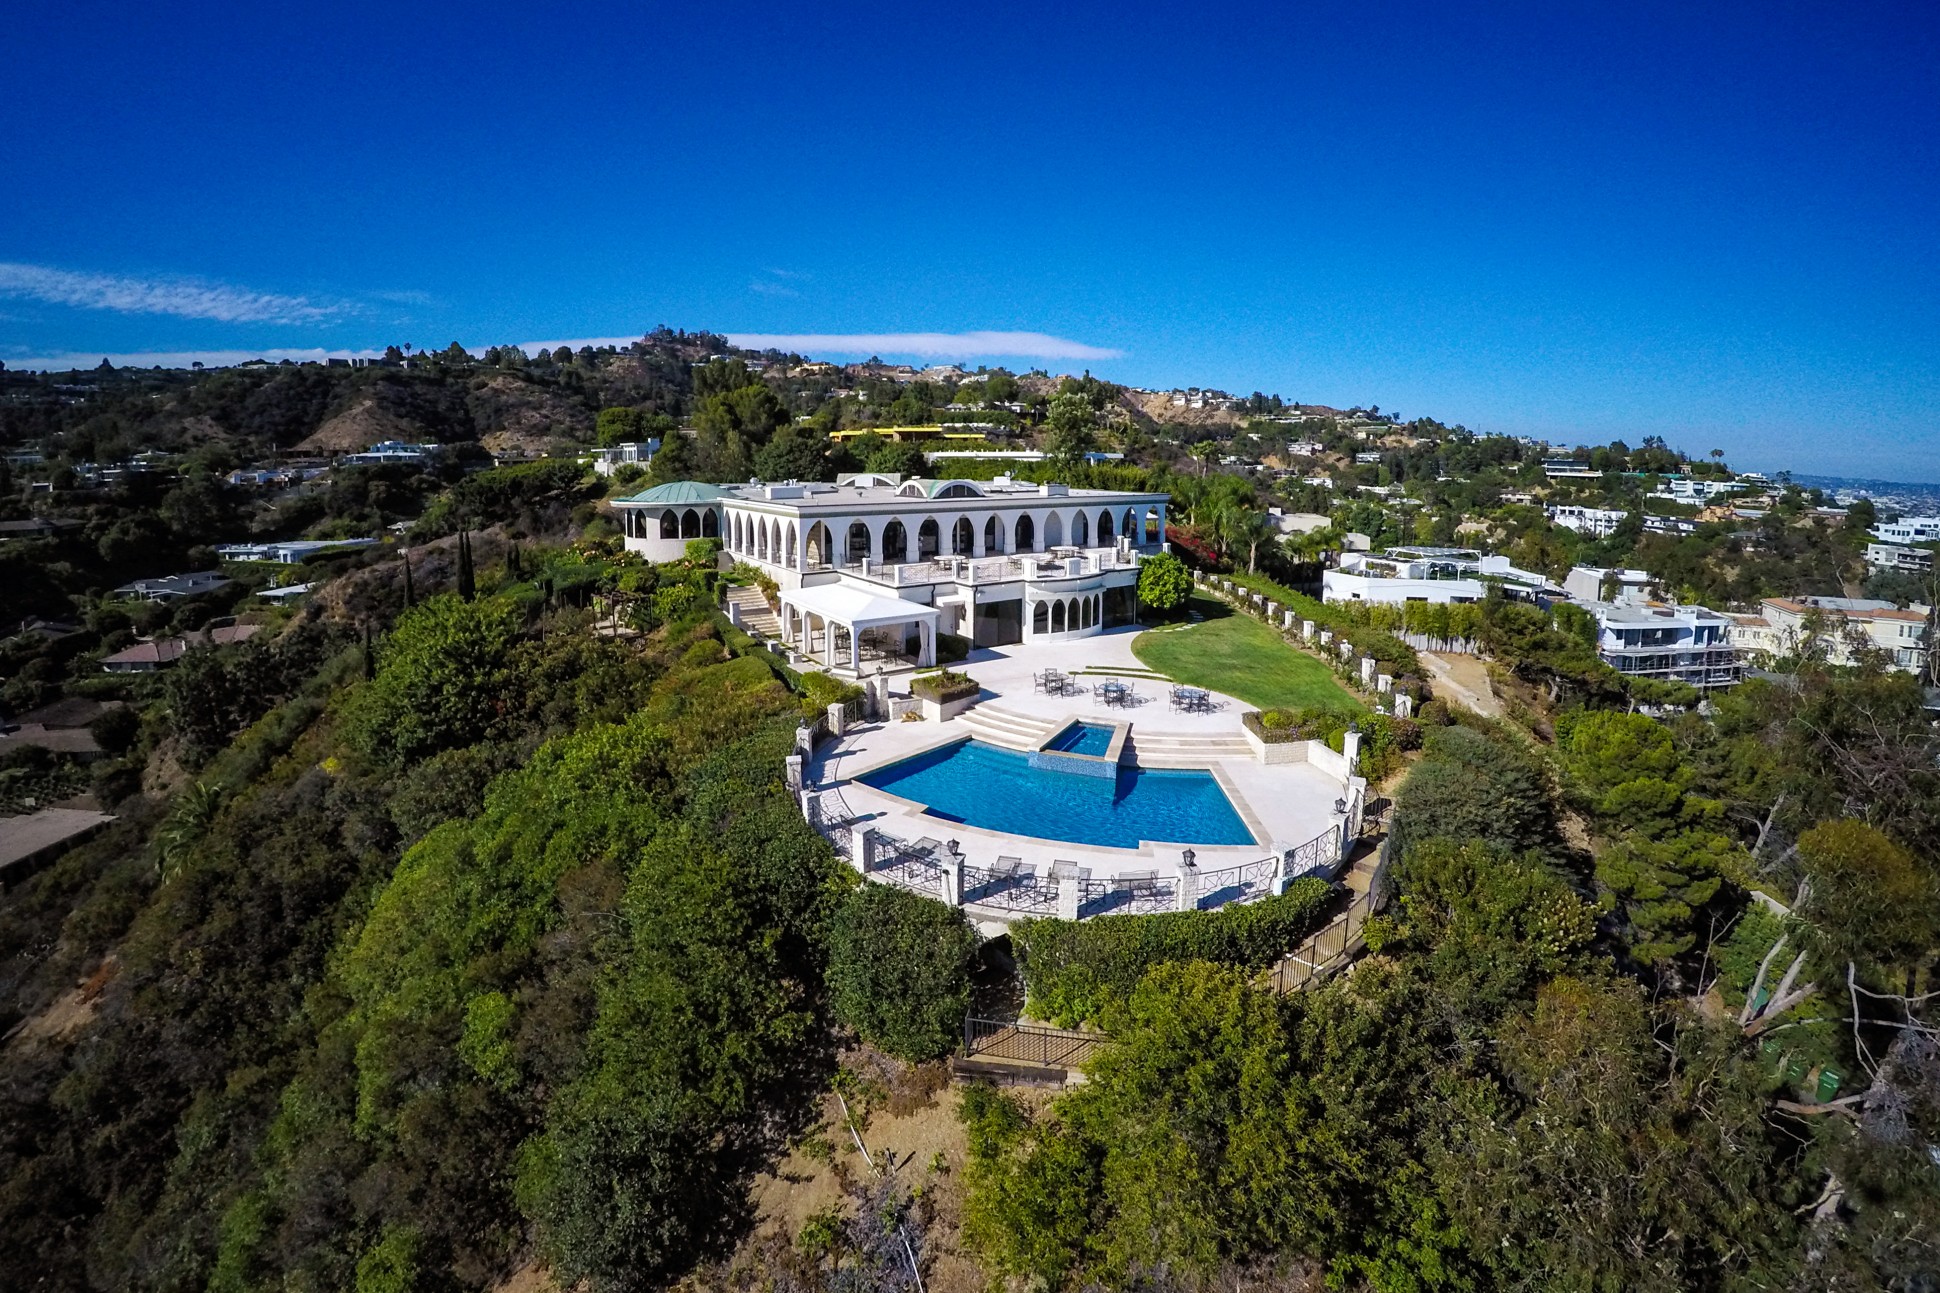 أغلى بيت في العالم "للراغبين"! منزل جيبلبير شاغوري في لوس أنجلوس معروض للبيع بـ135 مليون دولار.